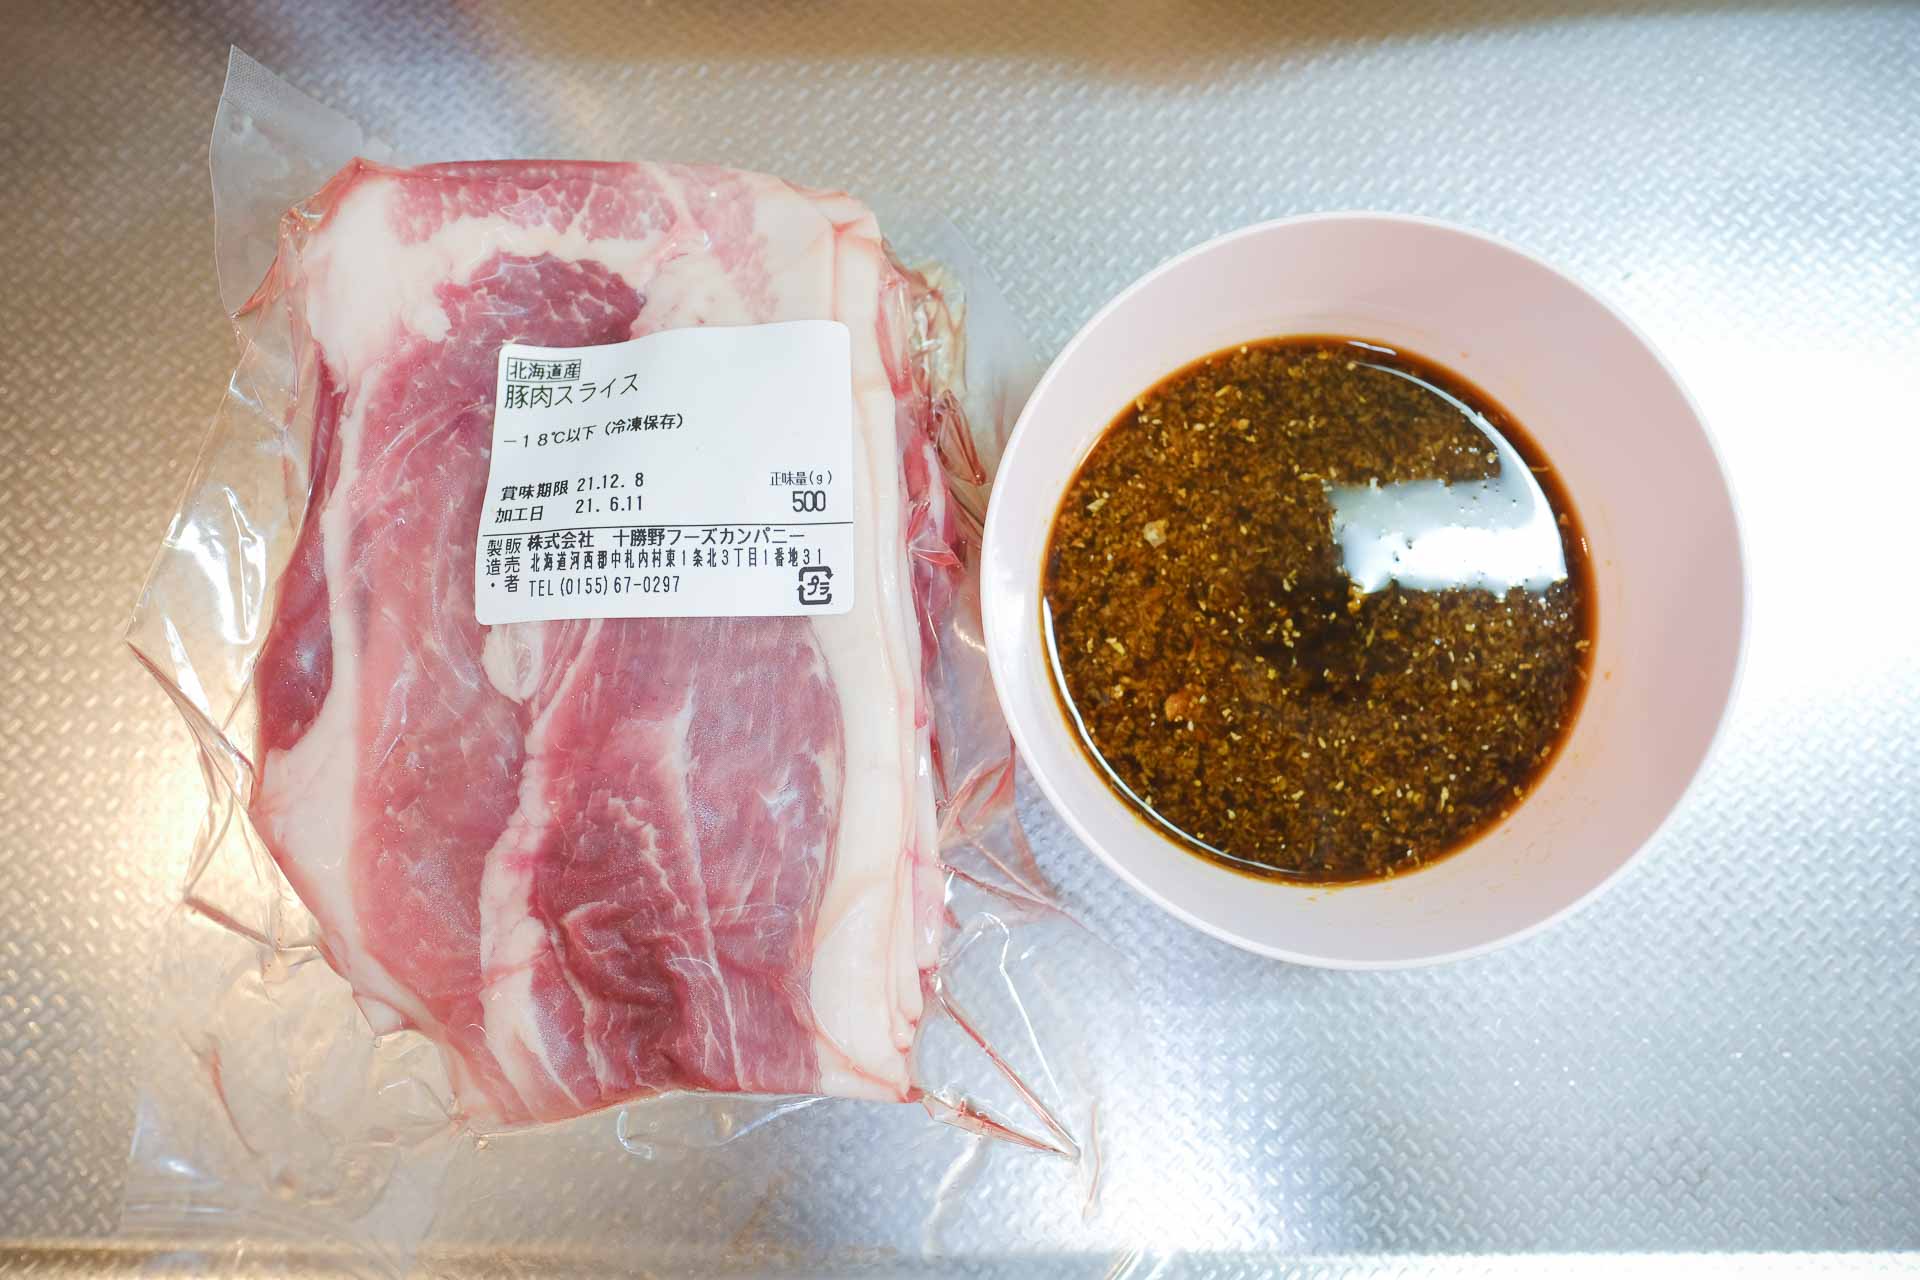 北海道中札内村からふるさと納税返礼品「豚スライス4kg盛り」が届きました。 | クラシア